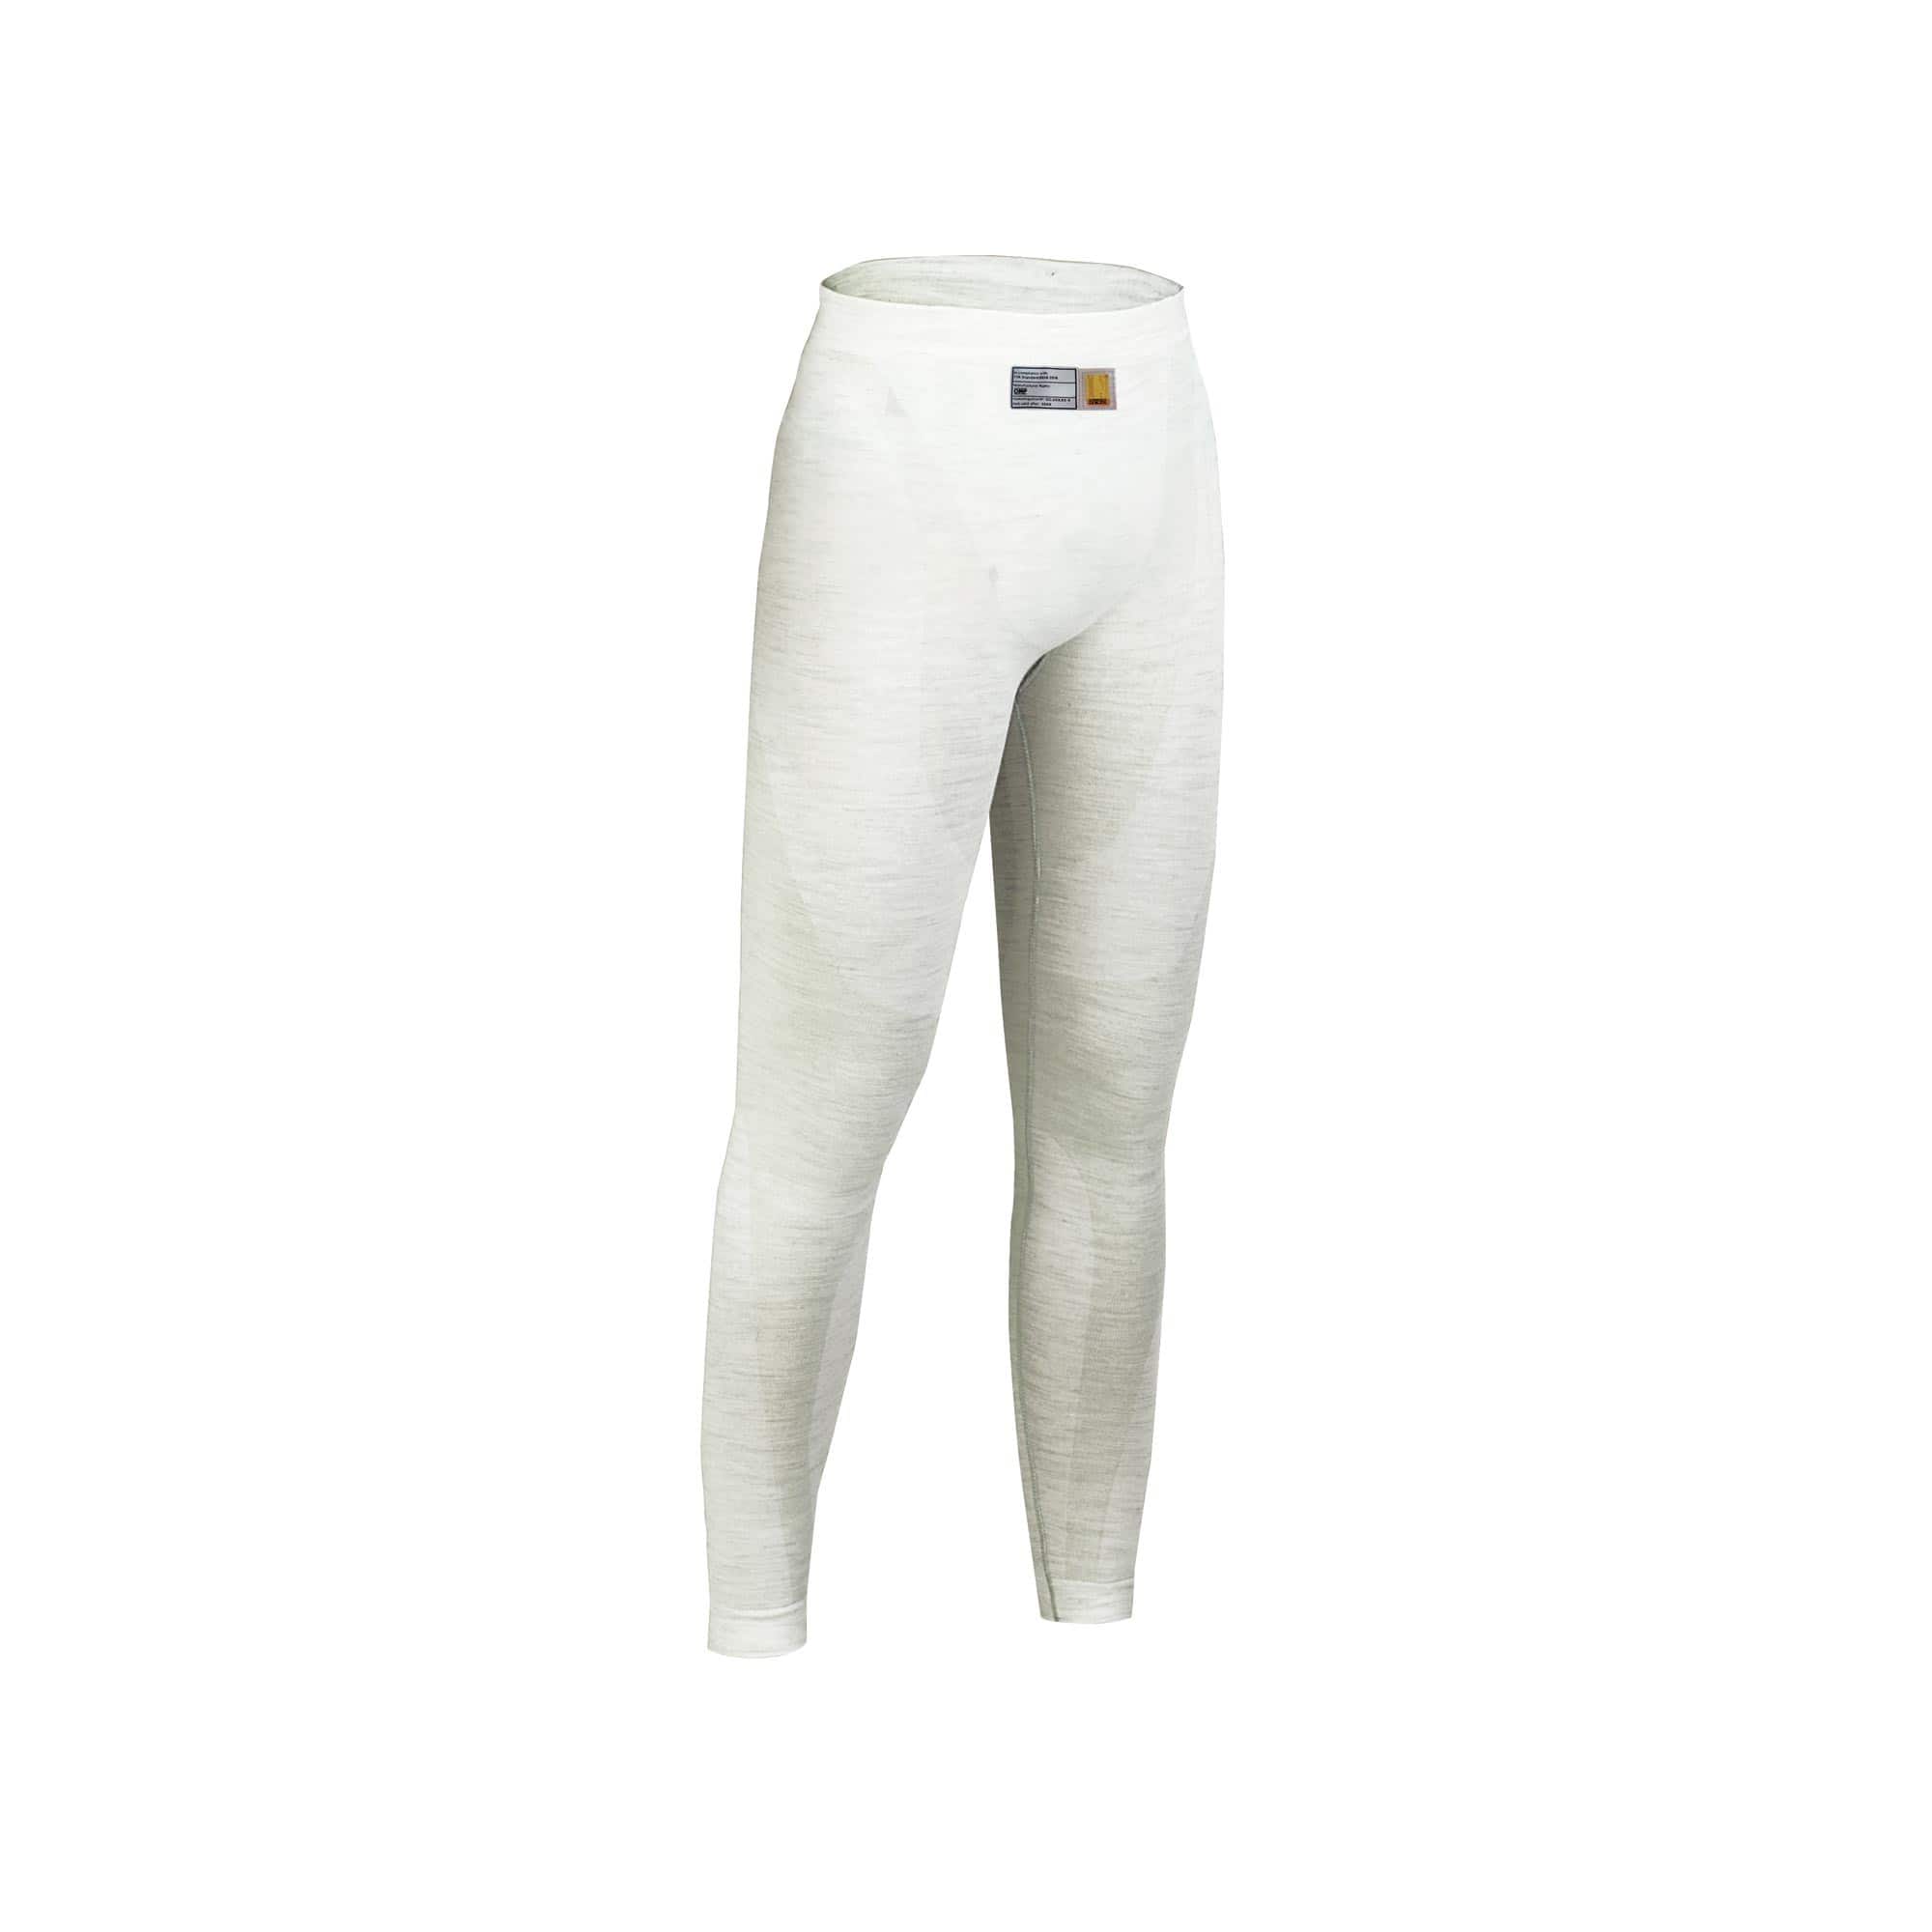 Pantaloni-sottotuta-One-Top-My2020-Bianco-IAA-761020